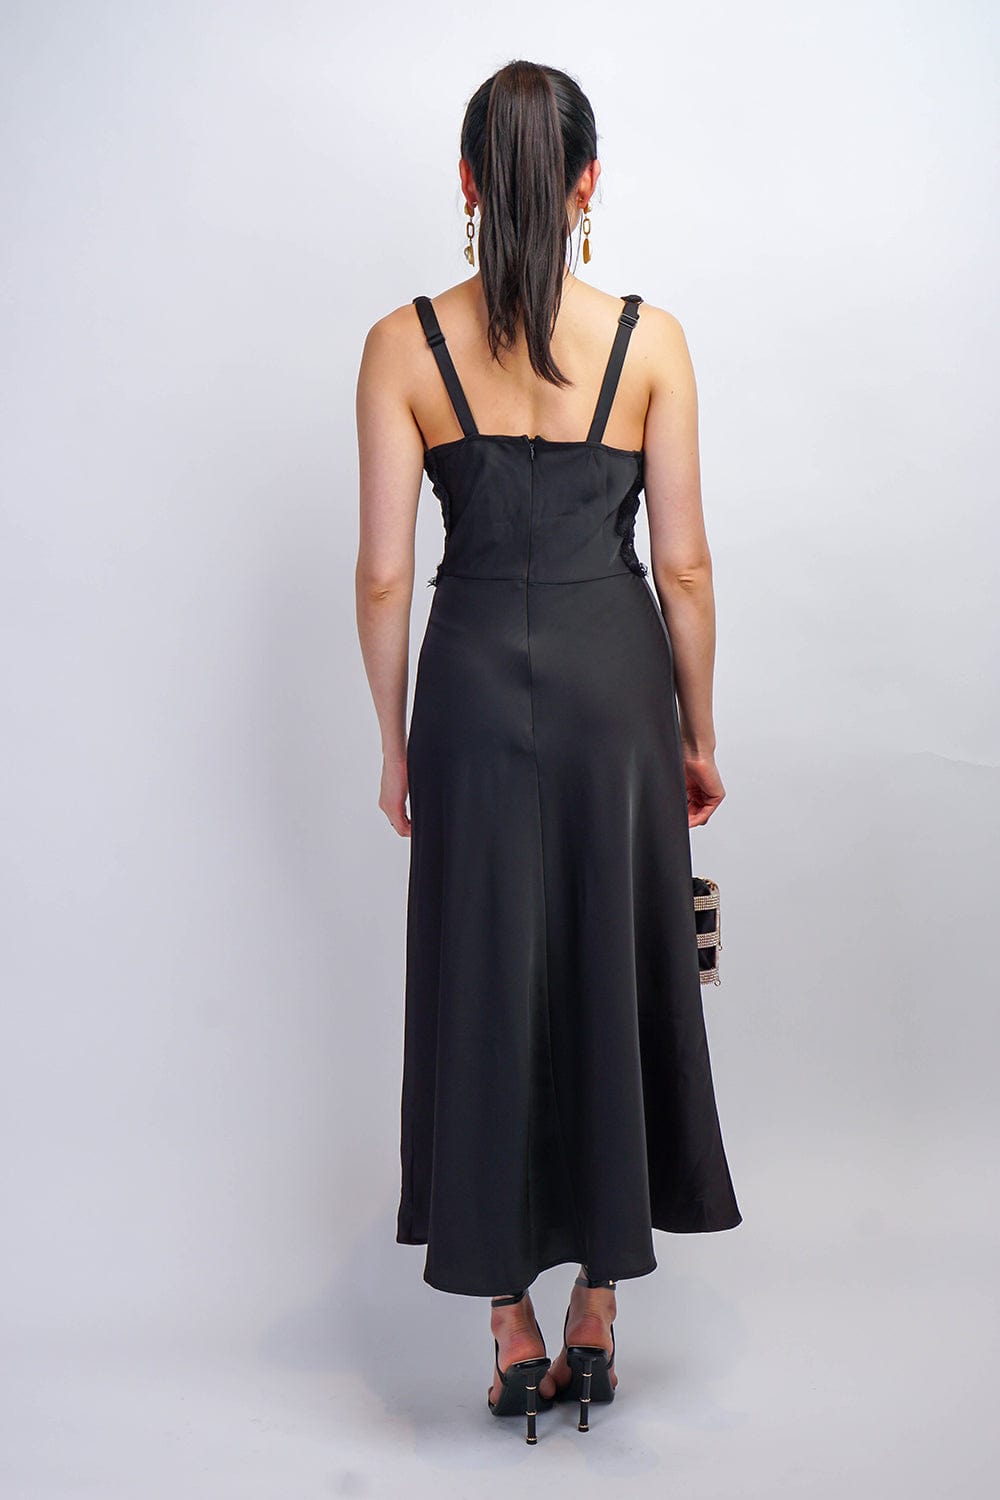 DCD DRESSES Black Lace Slip Satin Maxi Dress